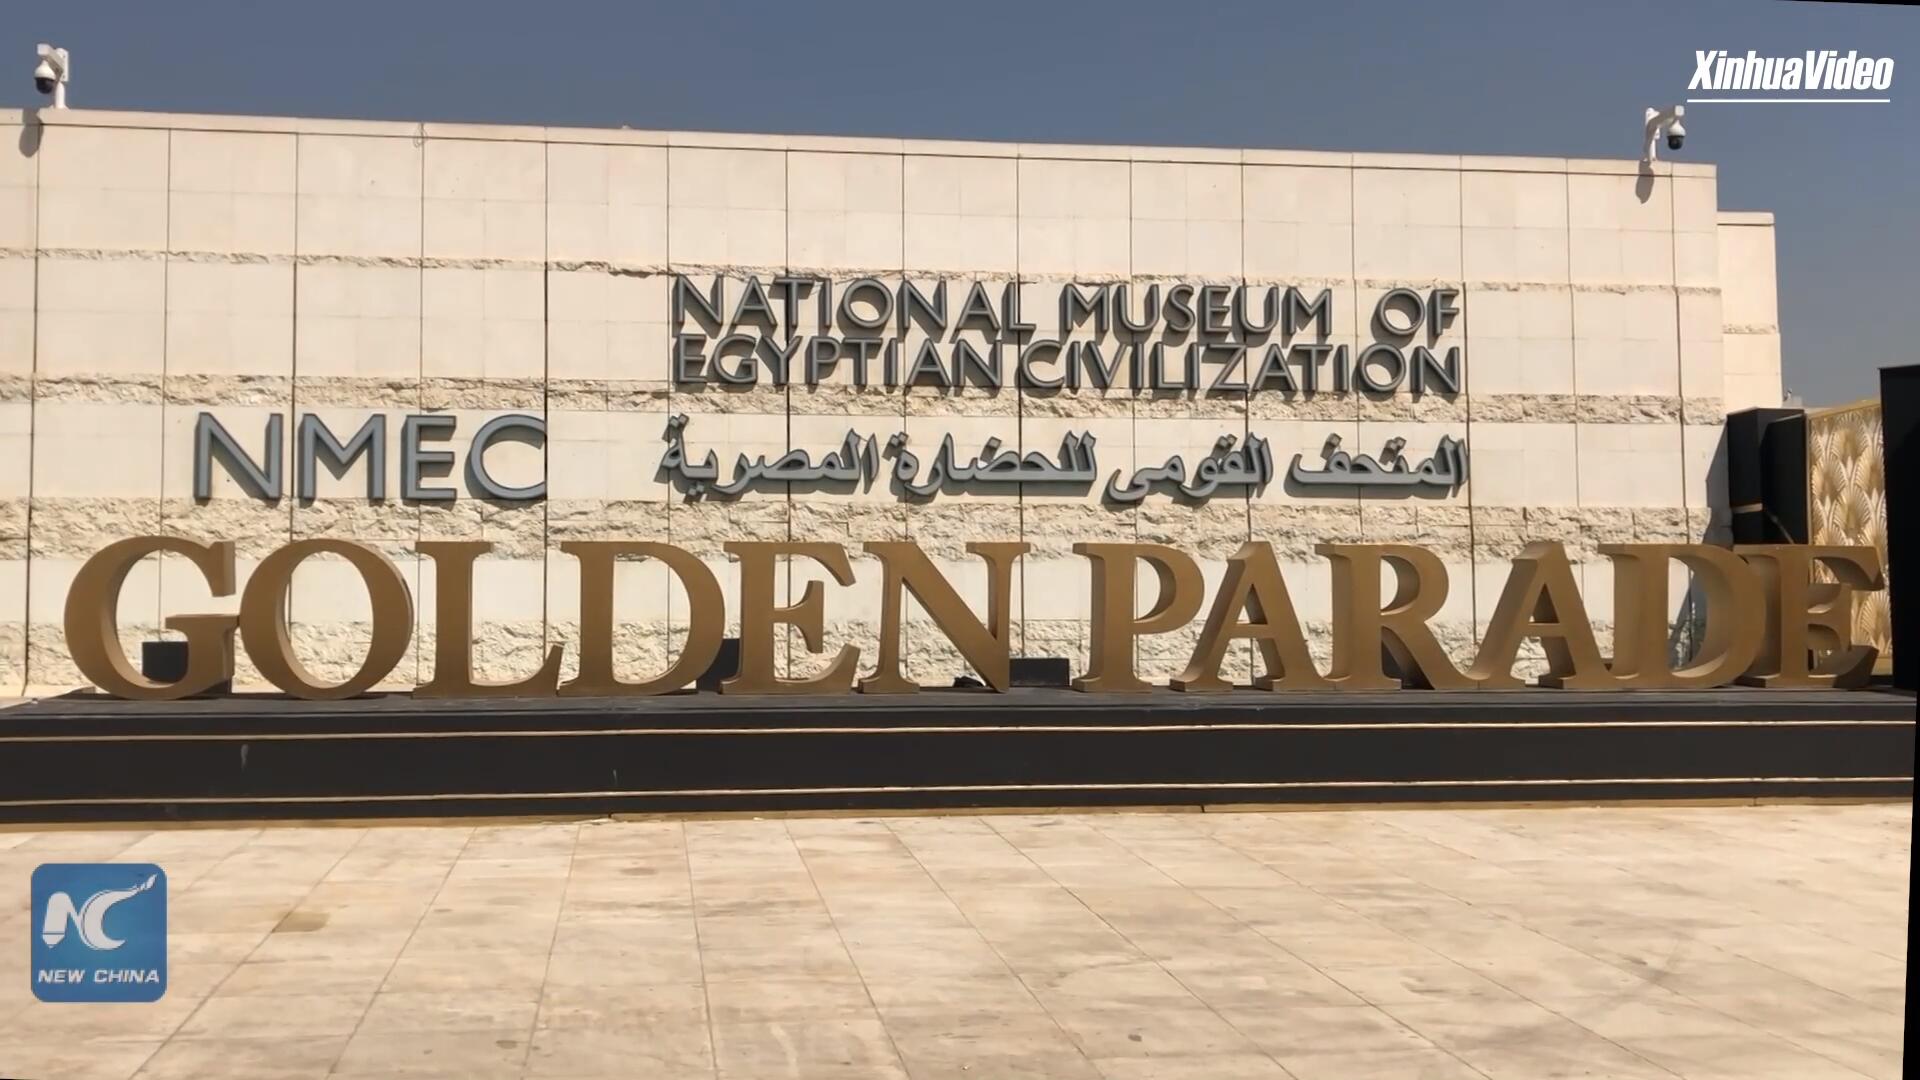 فيديو: متحف جديد في القاهرة يروي قصة الحضارة المصرية من عصور ما قبل التاريخ إلى العصر الحديث